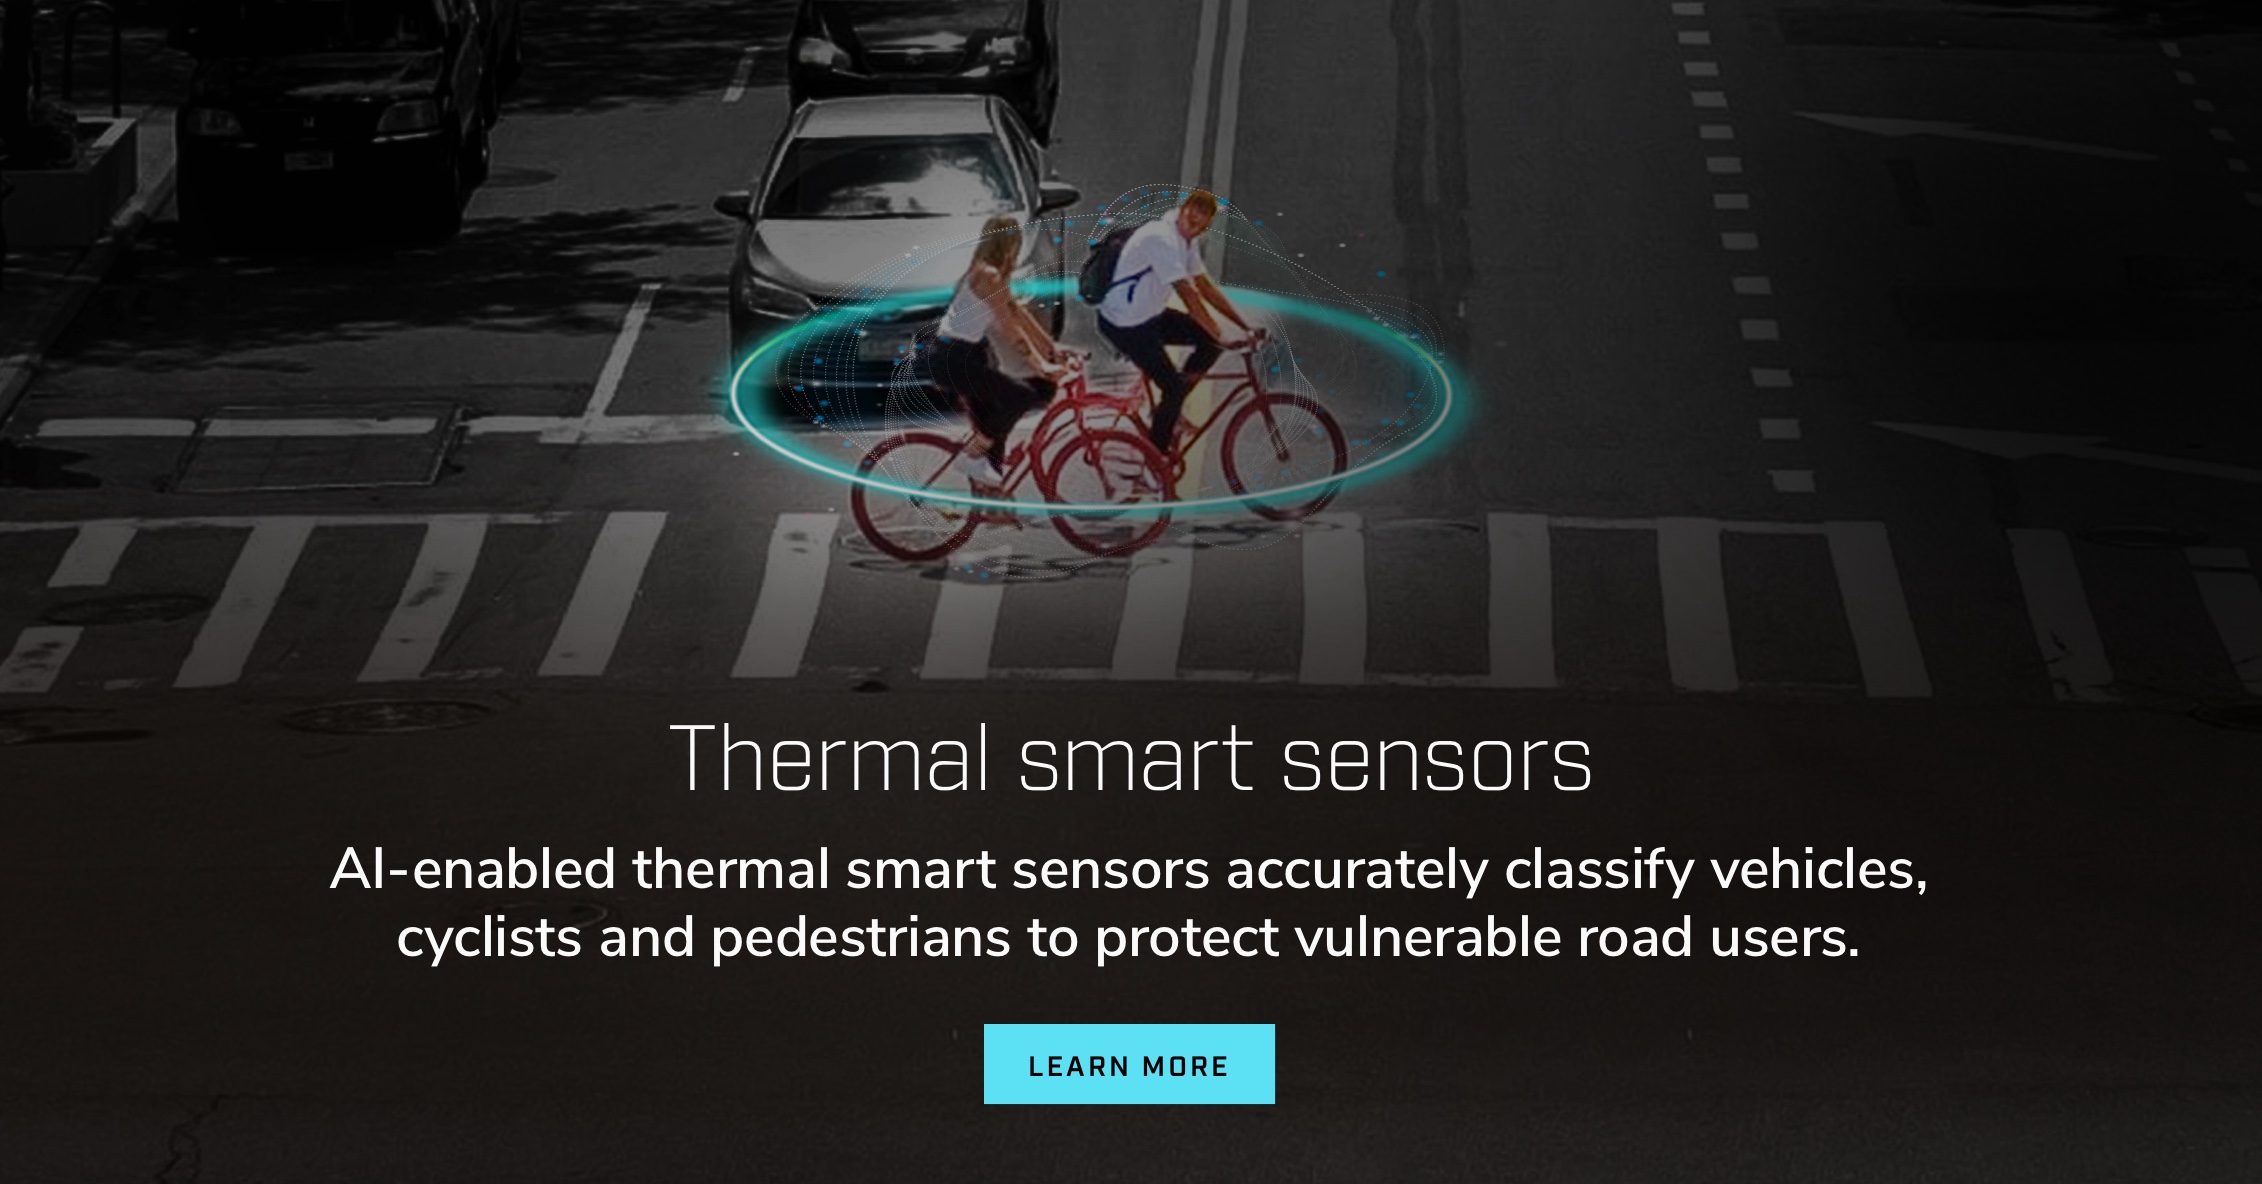 Sensores inteligentes térmicos. Los sensores inteligentes térmicos habilitados para IA clasifican con precisión vehículos, ciclistas y peatones para proteger a los usuarios vulnerables de la carretera.